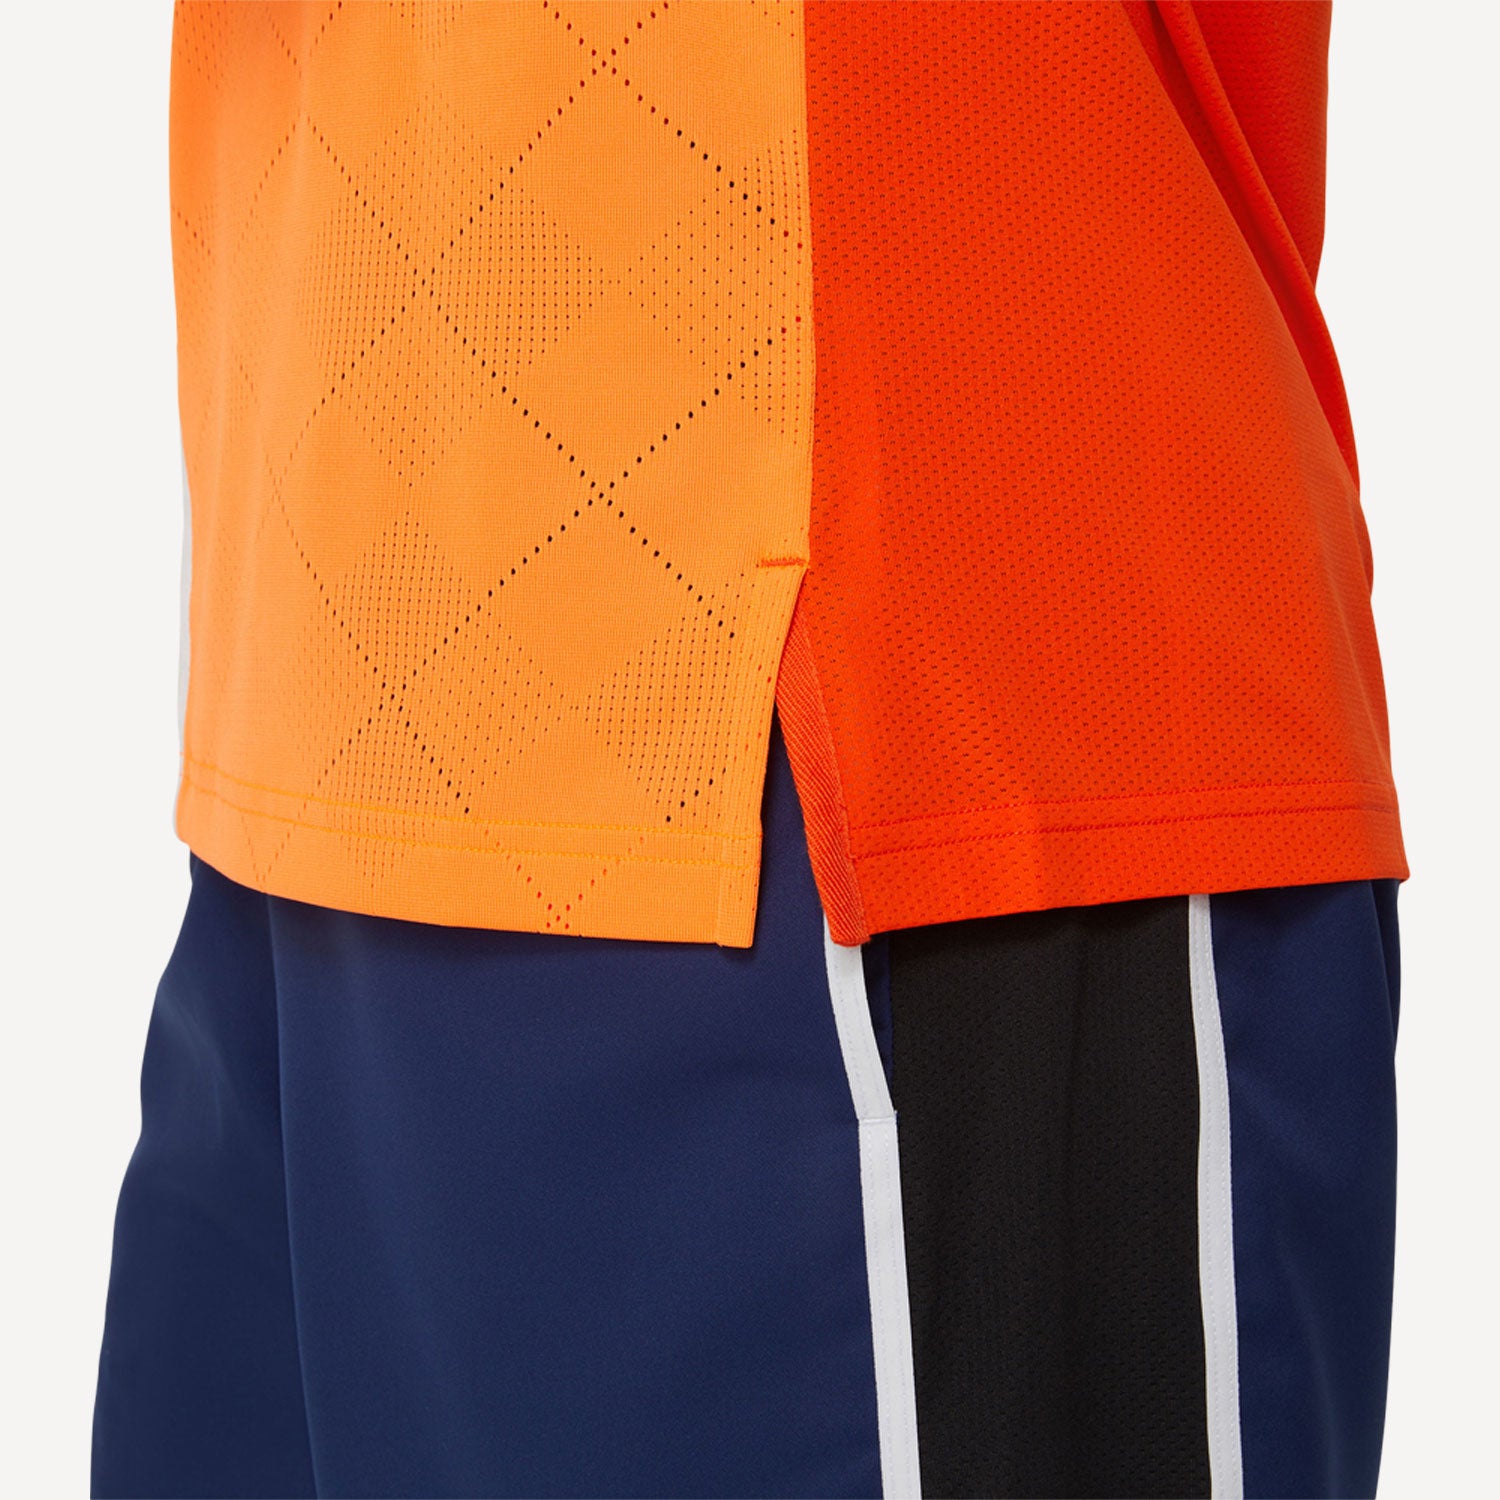 ASICS Match Men's Tennis Shirt - Orange (7)